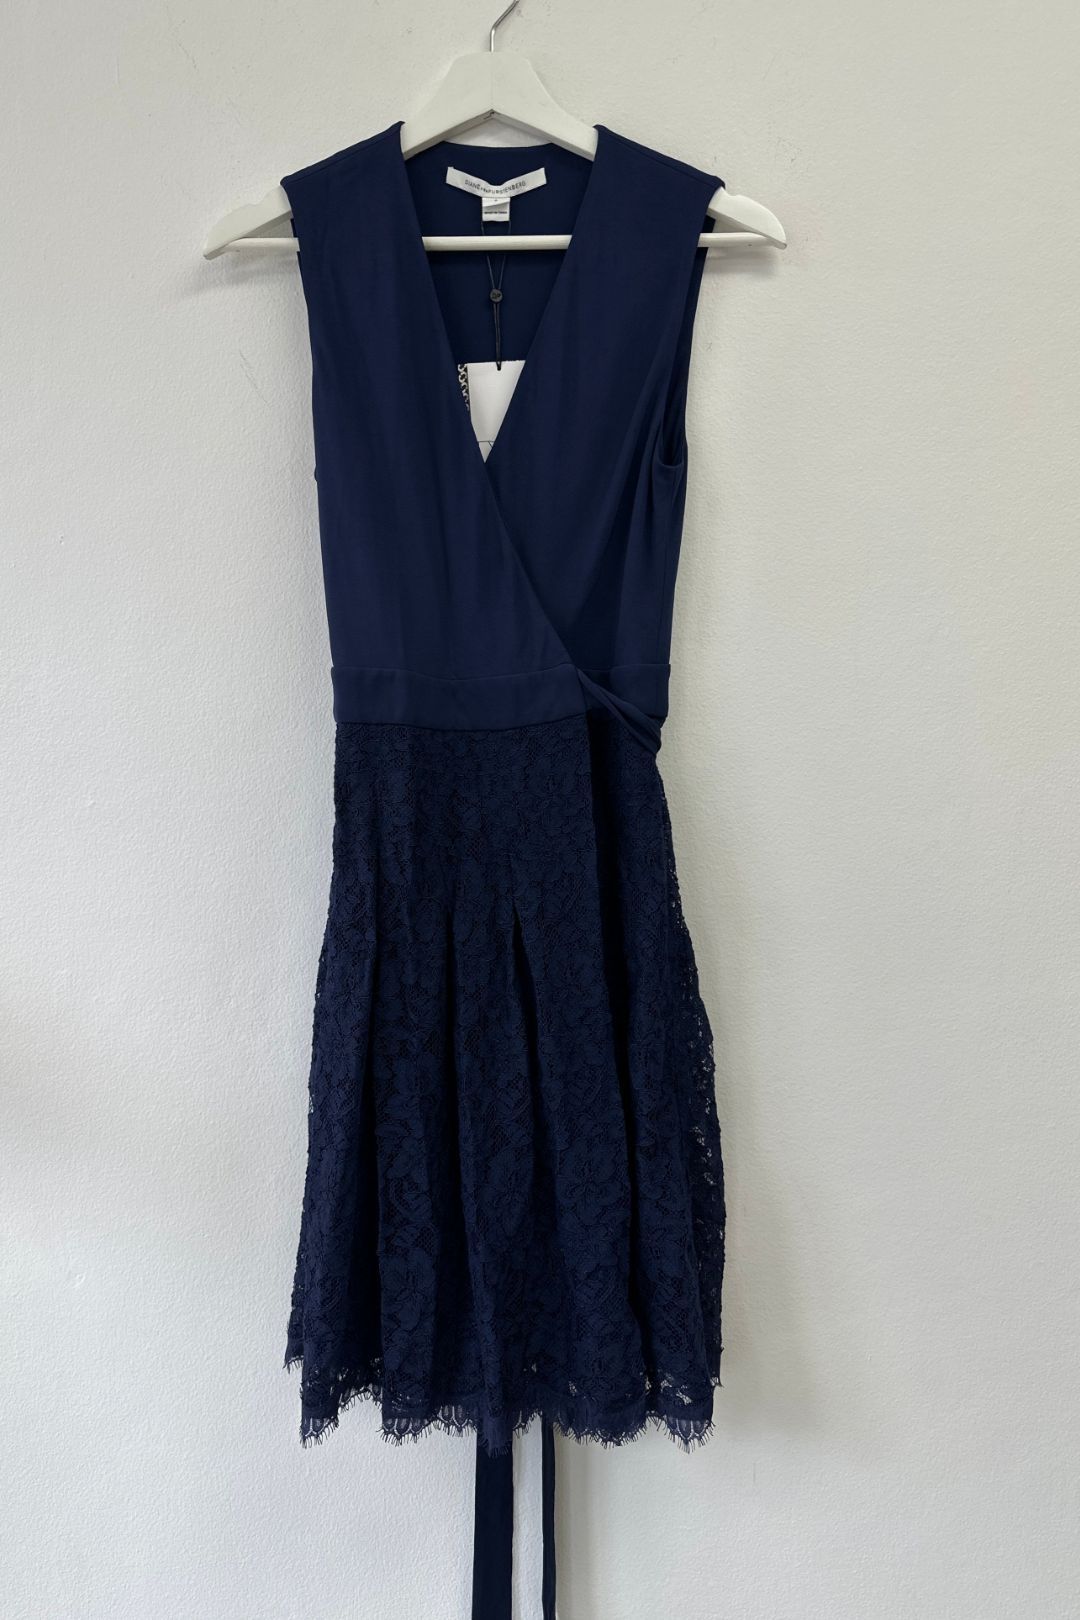 Diane Von Furstenberg - Stretch Lace Blue Wrap Dress